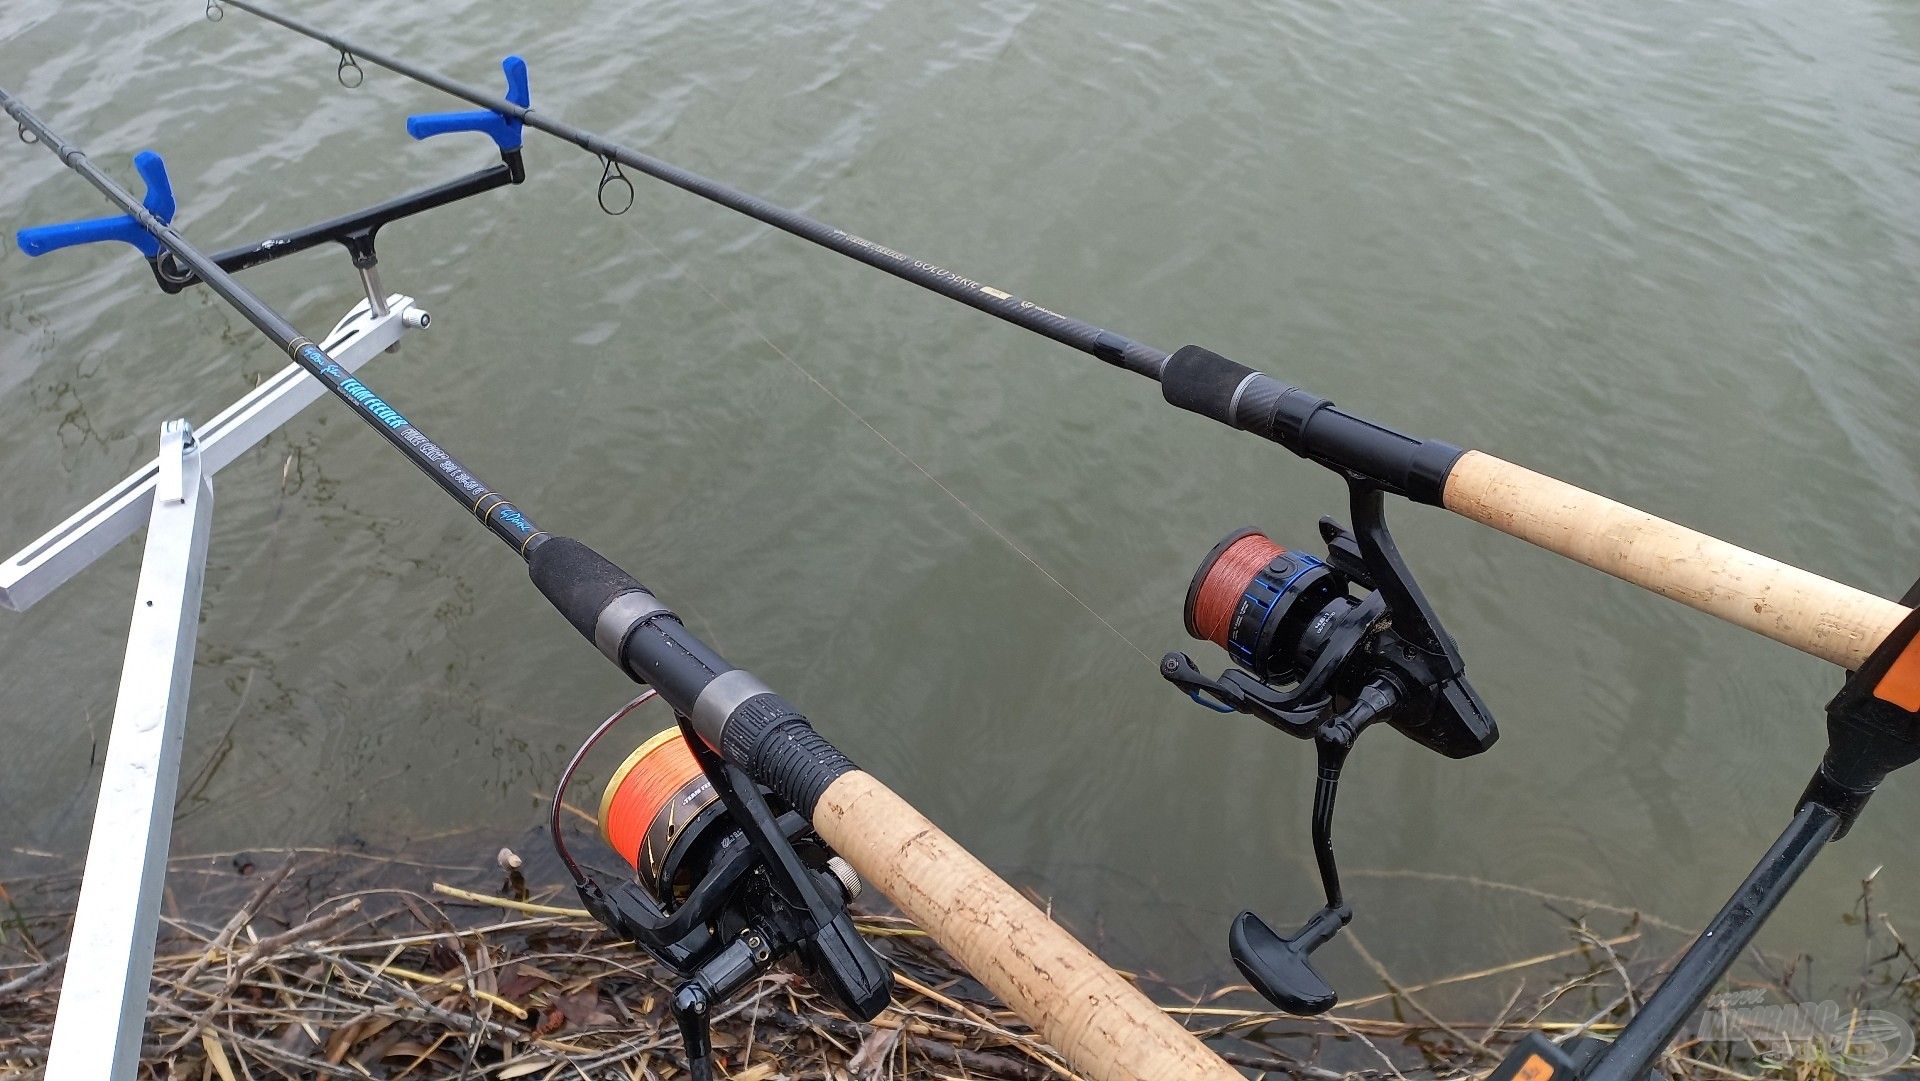 Mai horgászat fegyverei